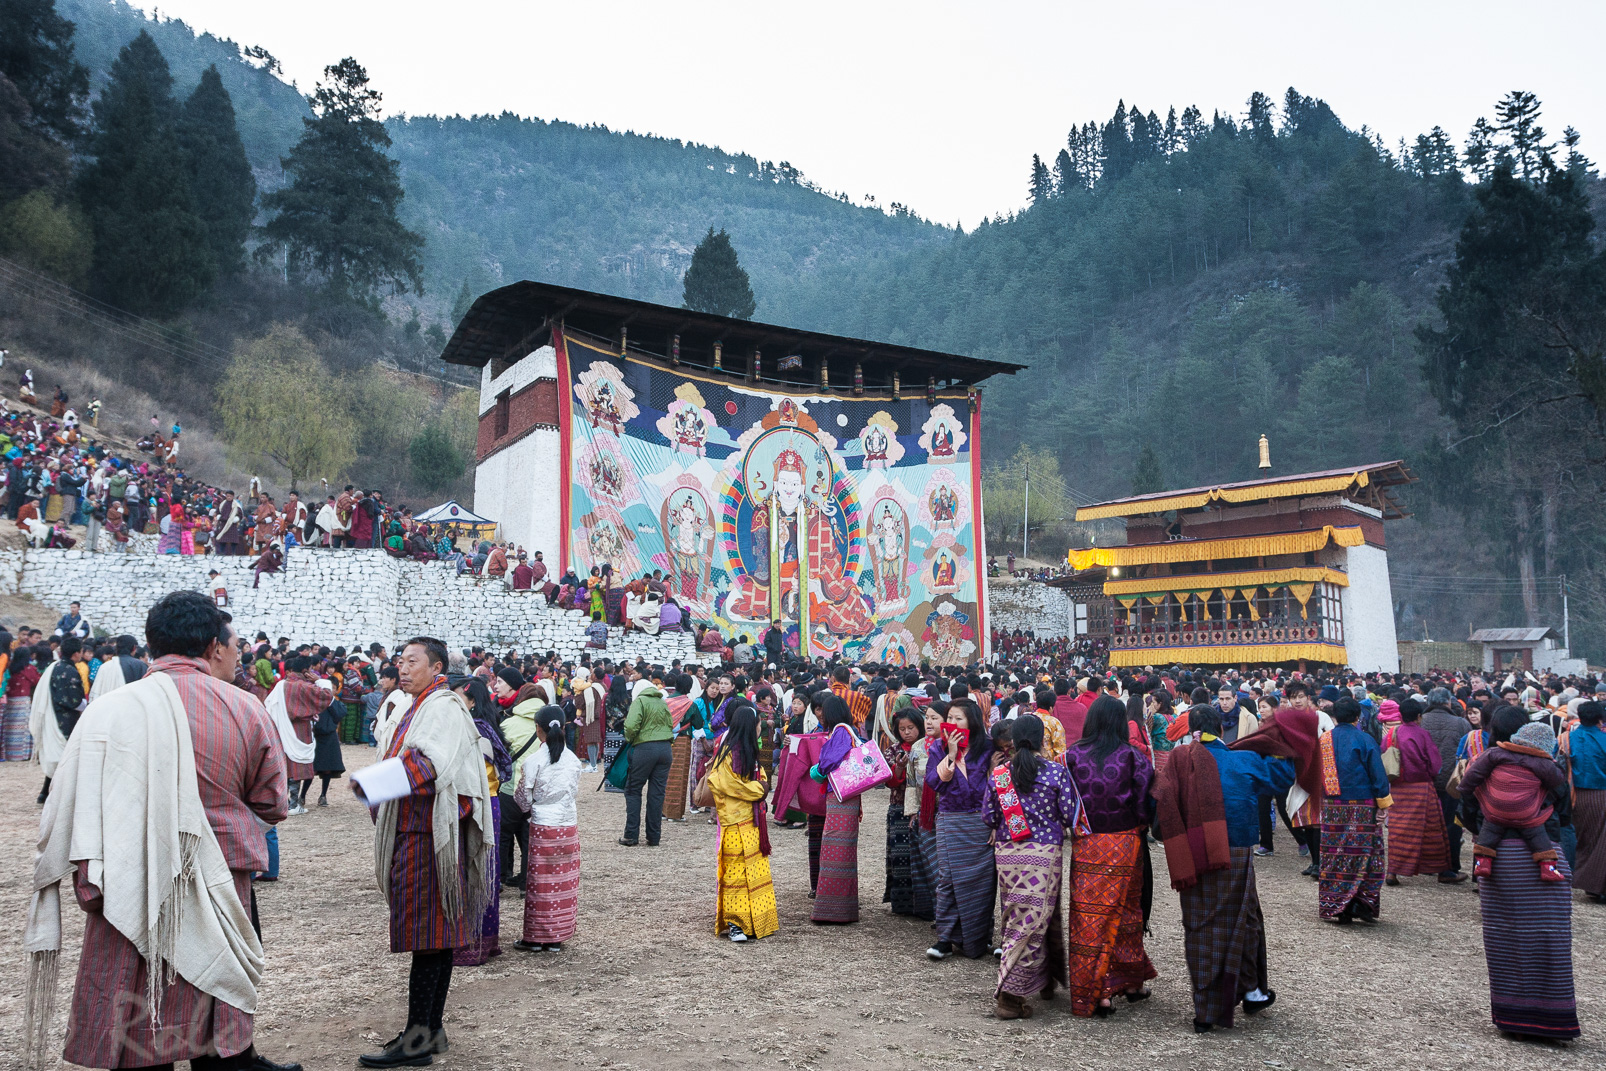 Lors du festival de Paro, le grand Thangka représentant le Guru Rinpoche (Padmasambhava) est déployé.